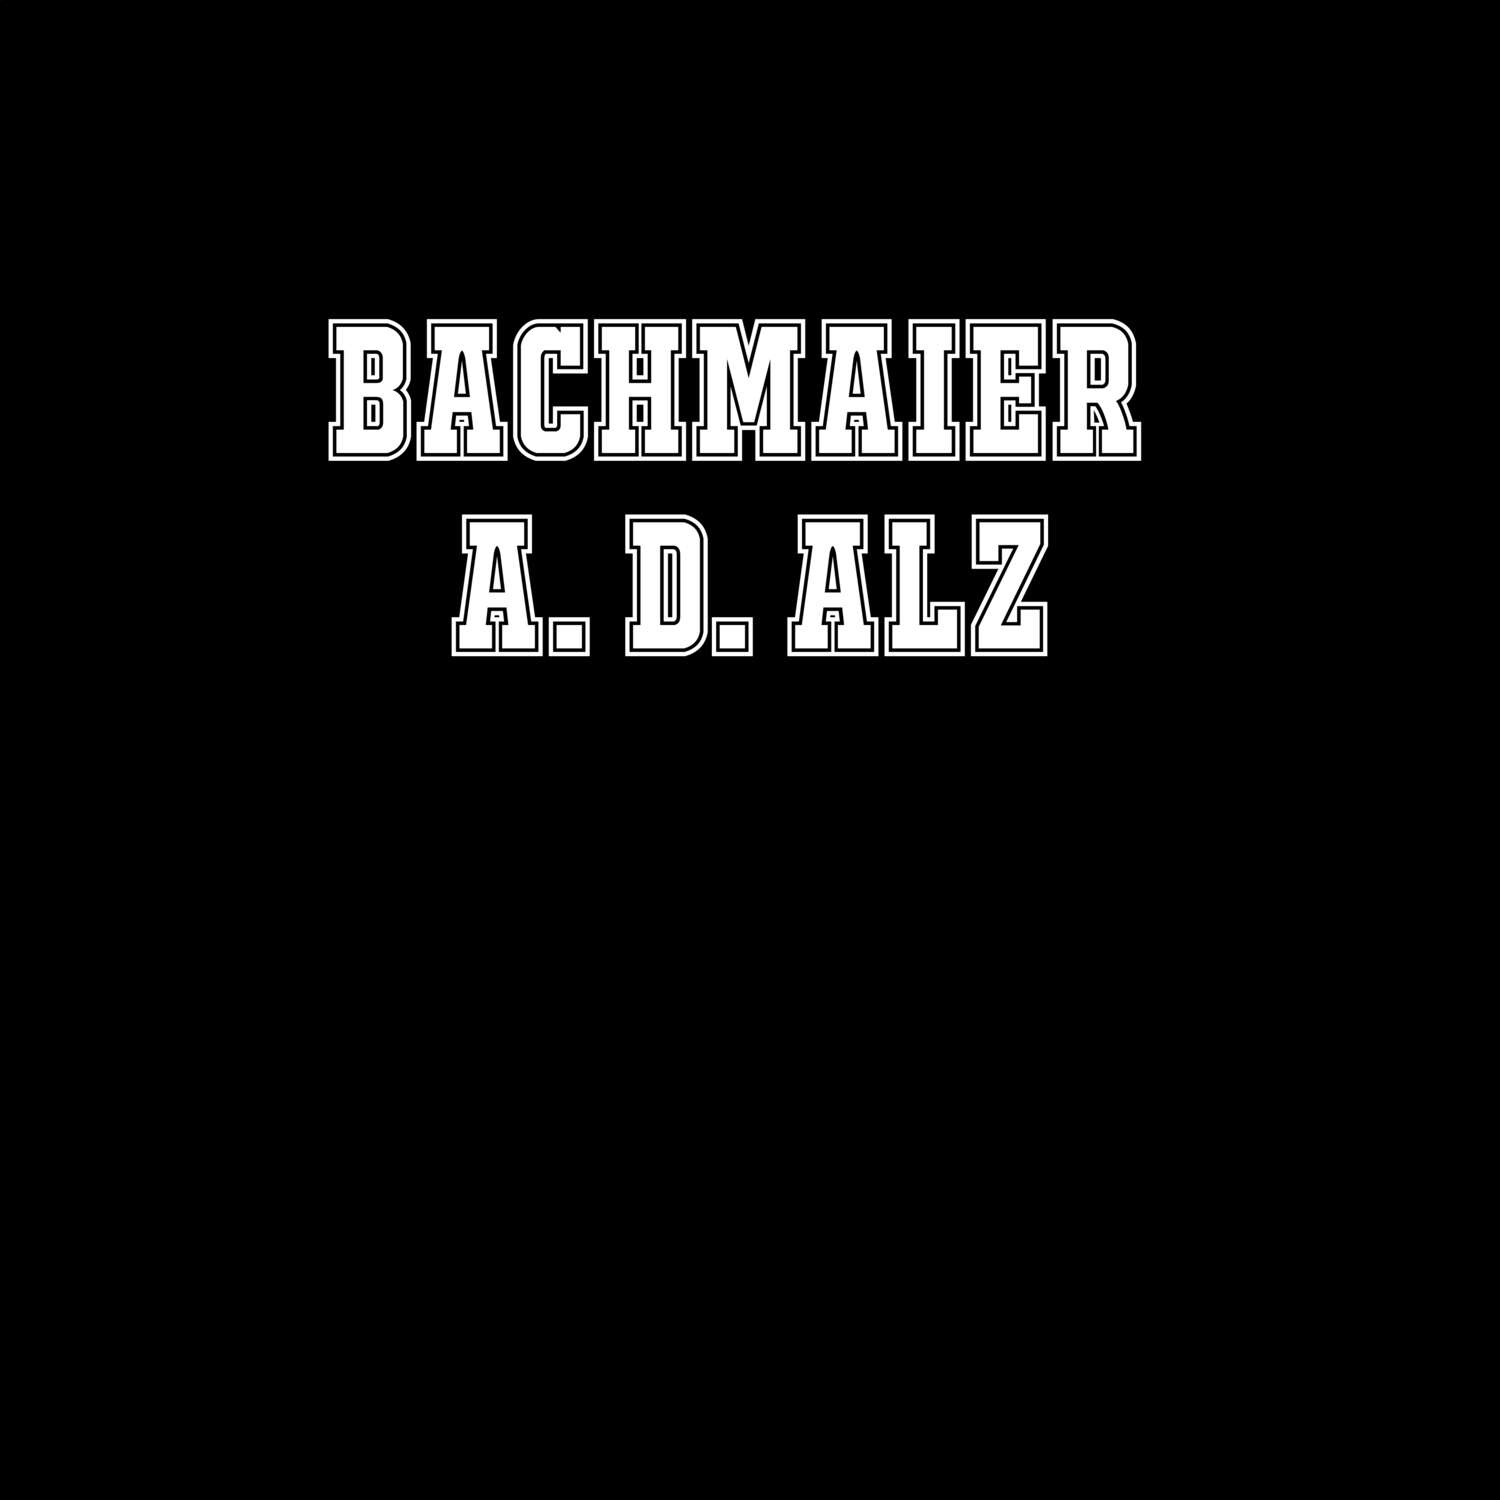 Bachmaier a. d. Alz T-Shirt »Classic«